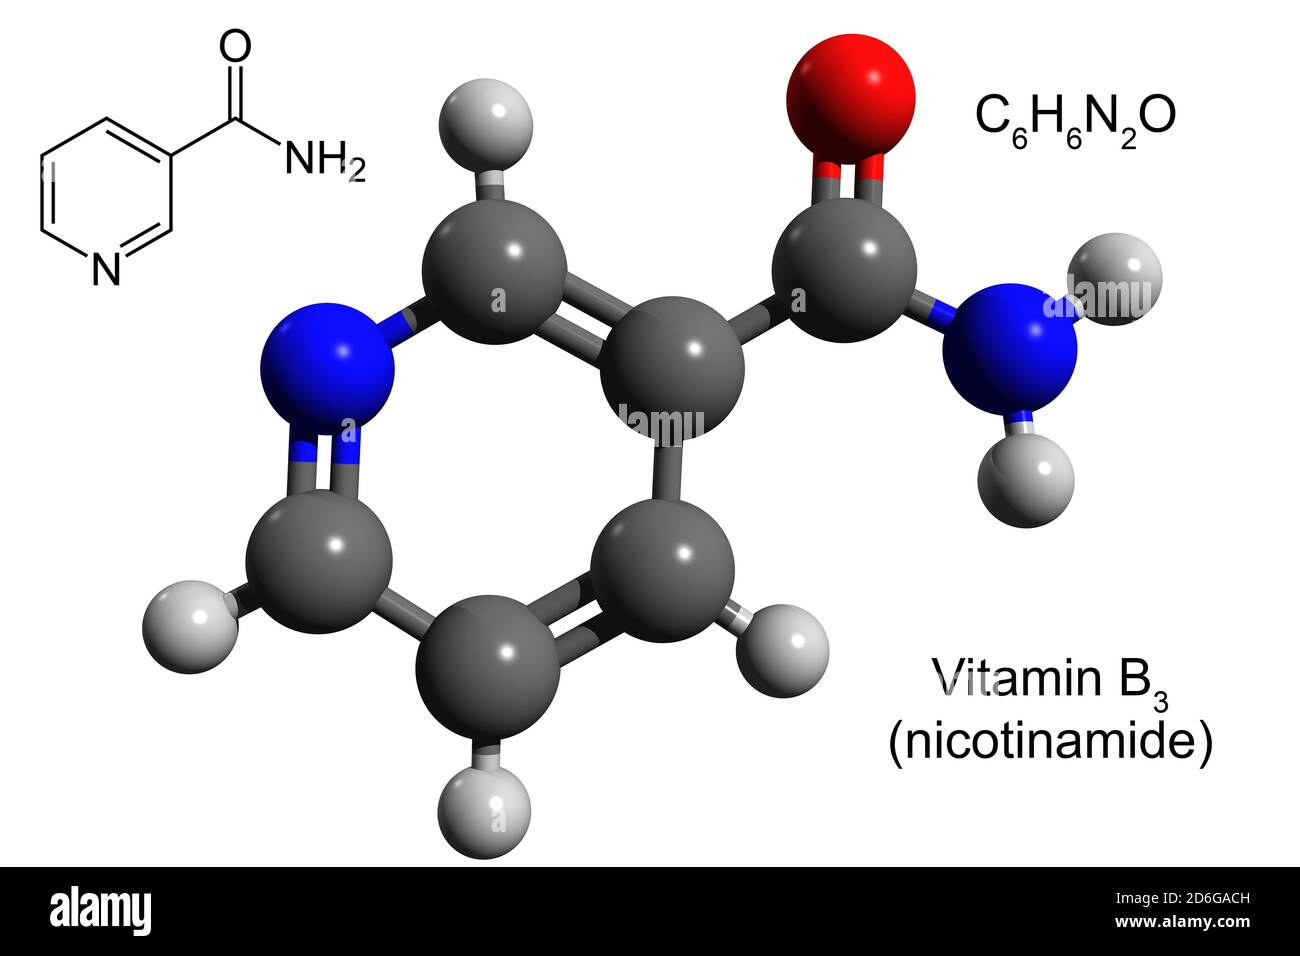 Formule chimique, formule structurale et modèle boule-et-bâton 3D de la vitamine B3 (nicotinamide), fond blanc Banque D'Images